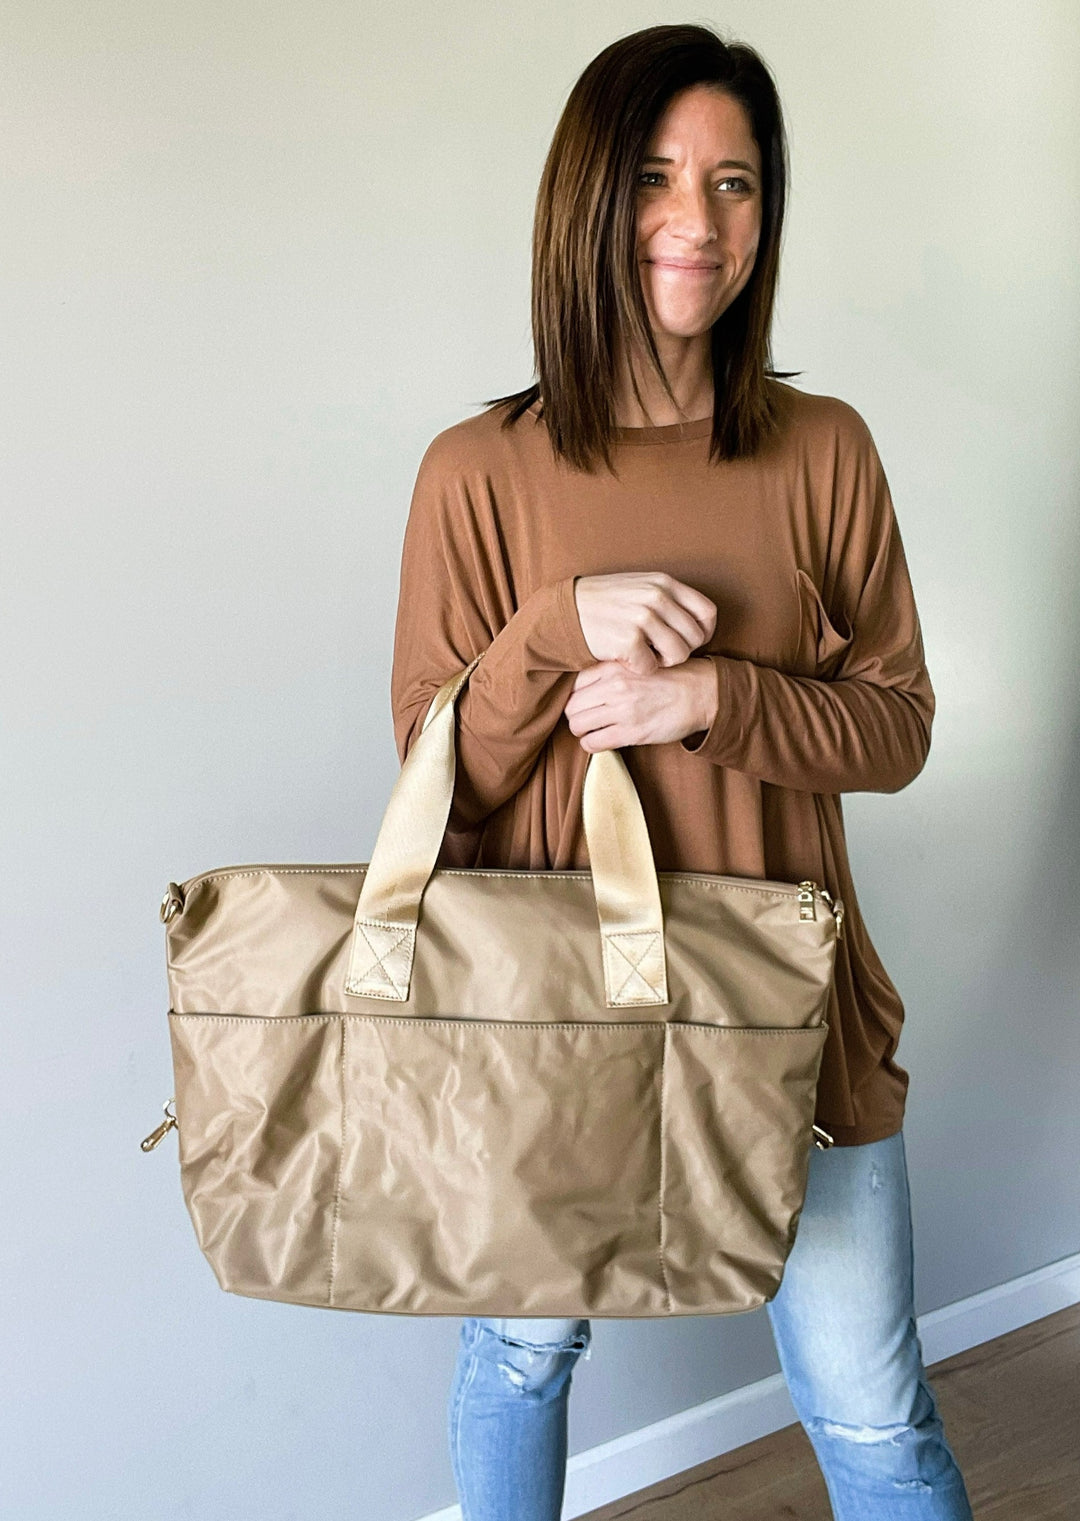 Women's Travel Bag - Taupe Nylon Weekender Bag